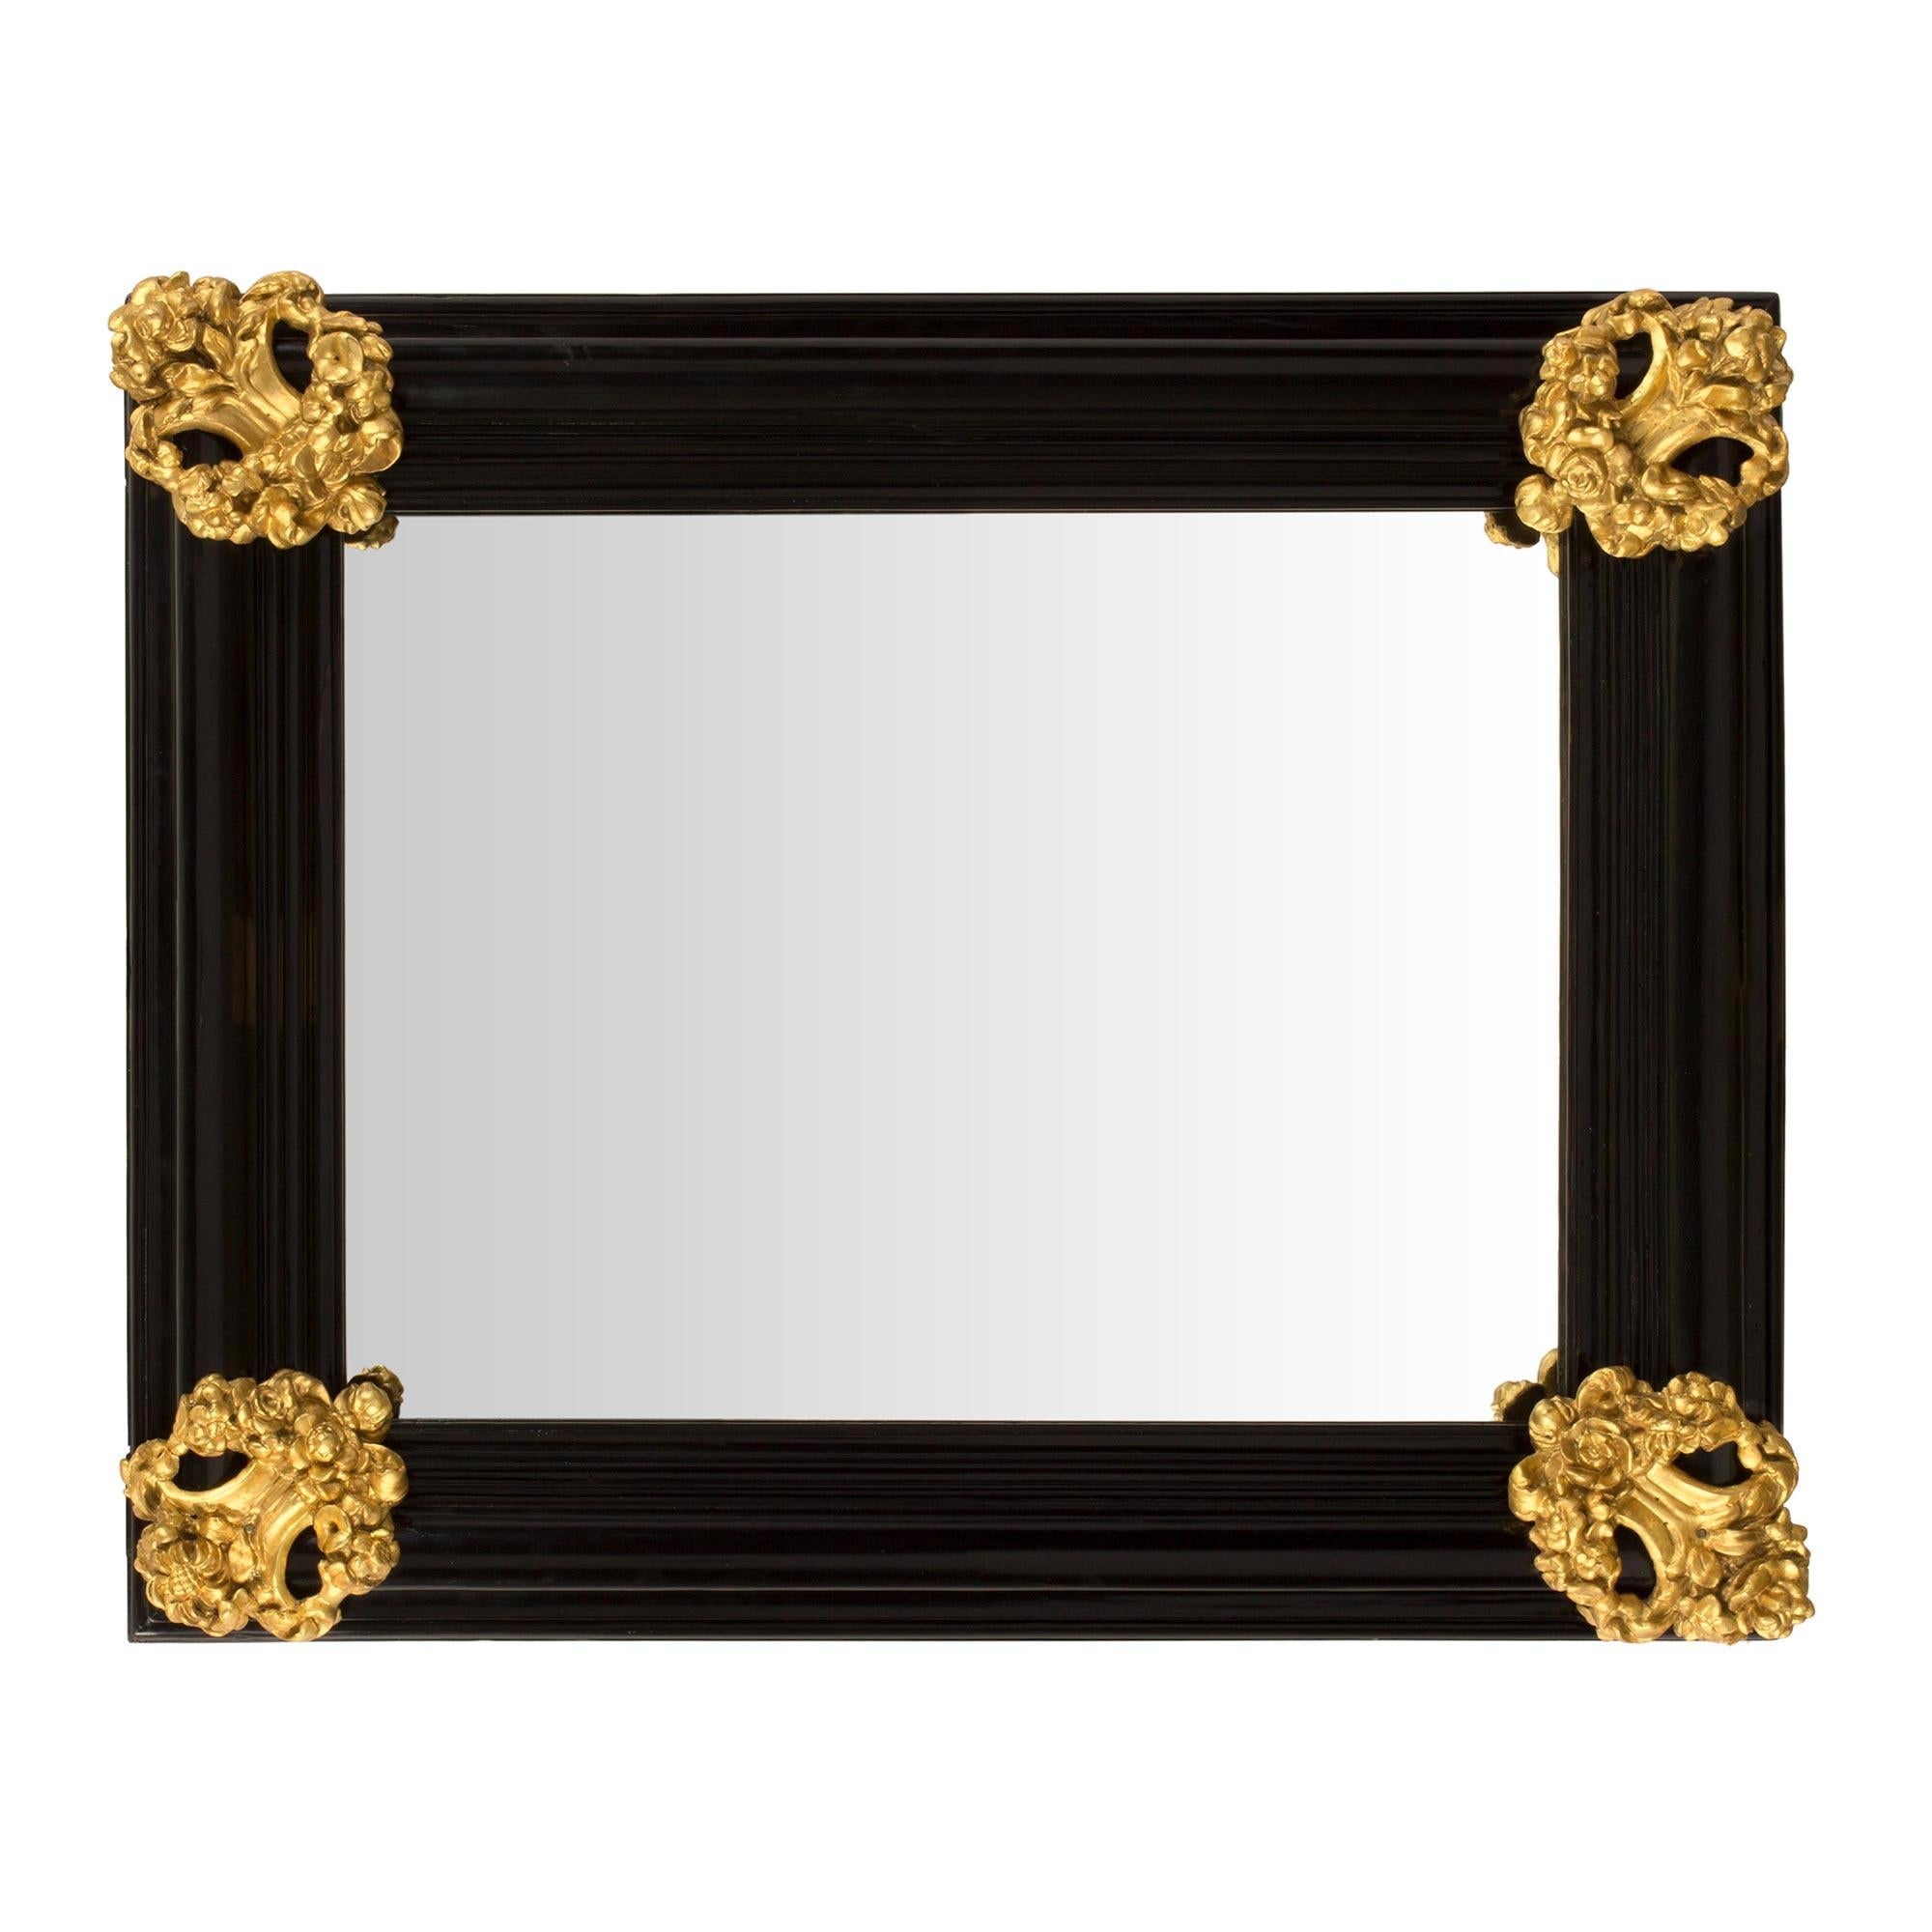 Italian 18th Century Baroque Period Florentine Rectangular Mirror For Sale 1